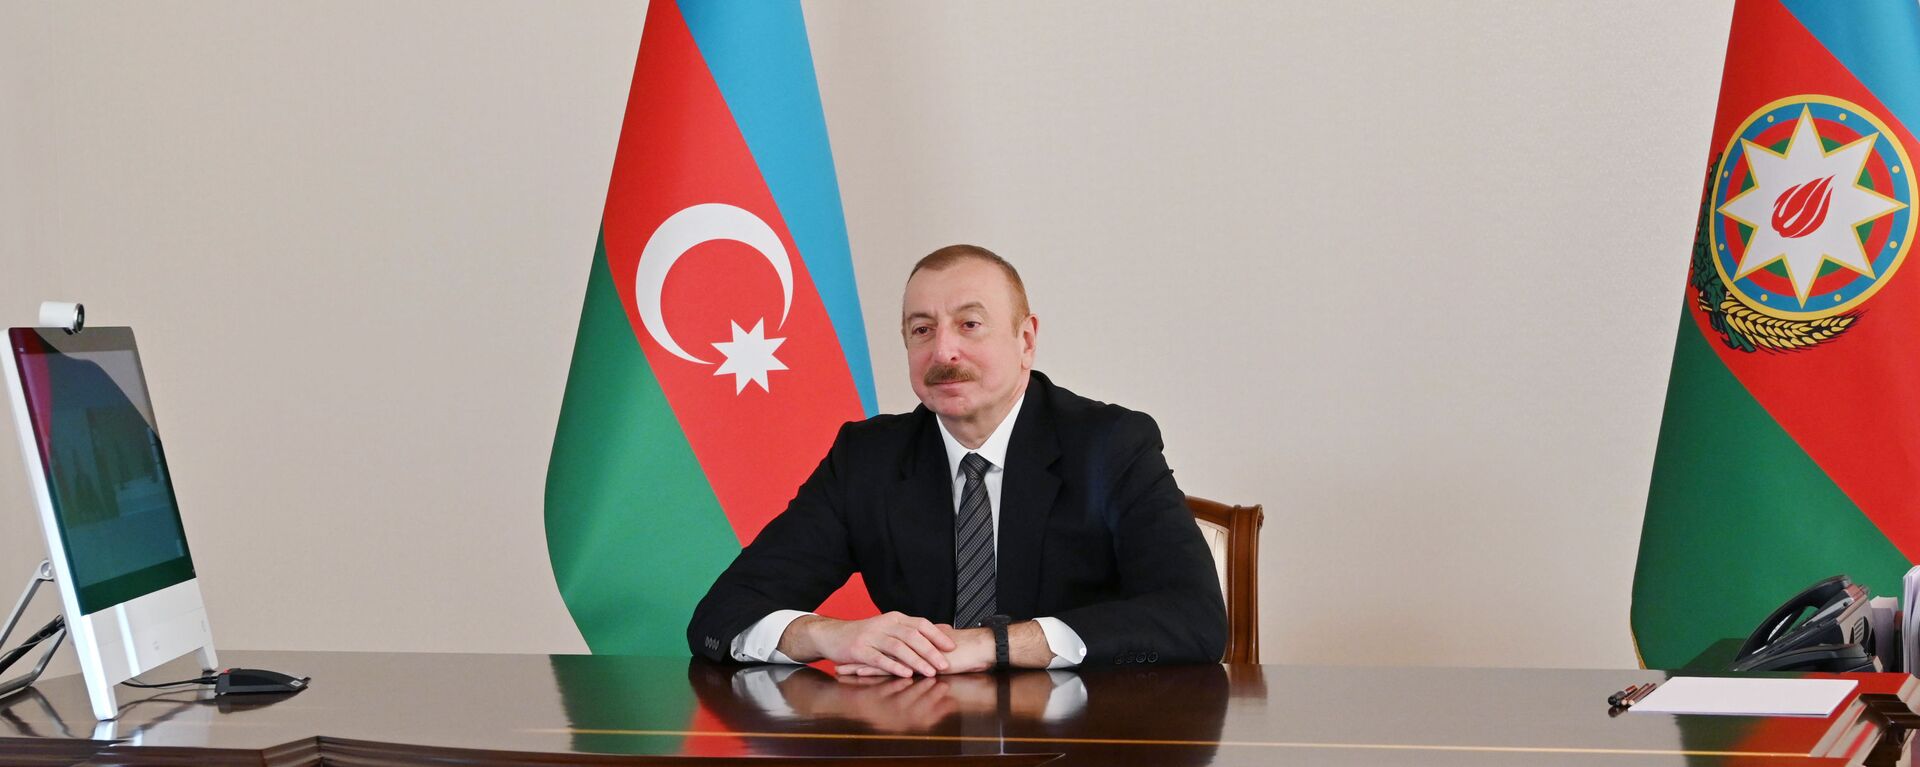 Президент Ильхам Алиев выступил на онлайн Саммите Организации экономического сотрудничества - Sputnik Азербайджан, 1920, 04.03.2021